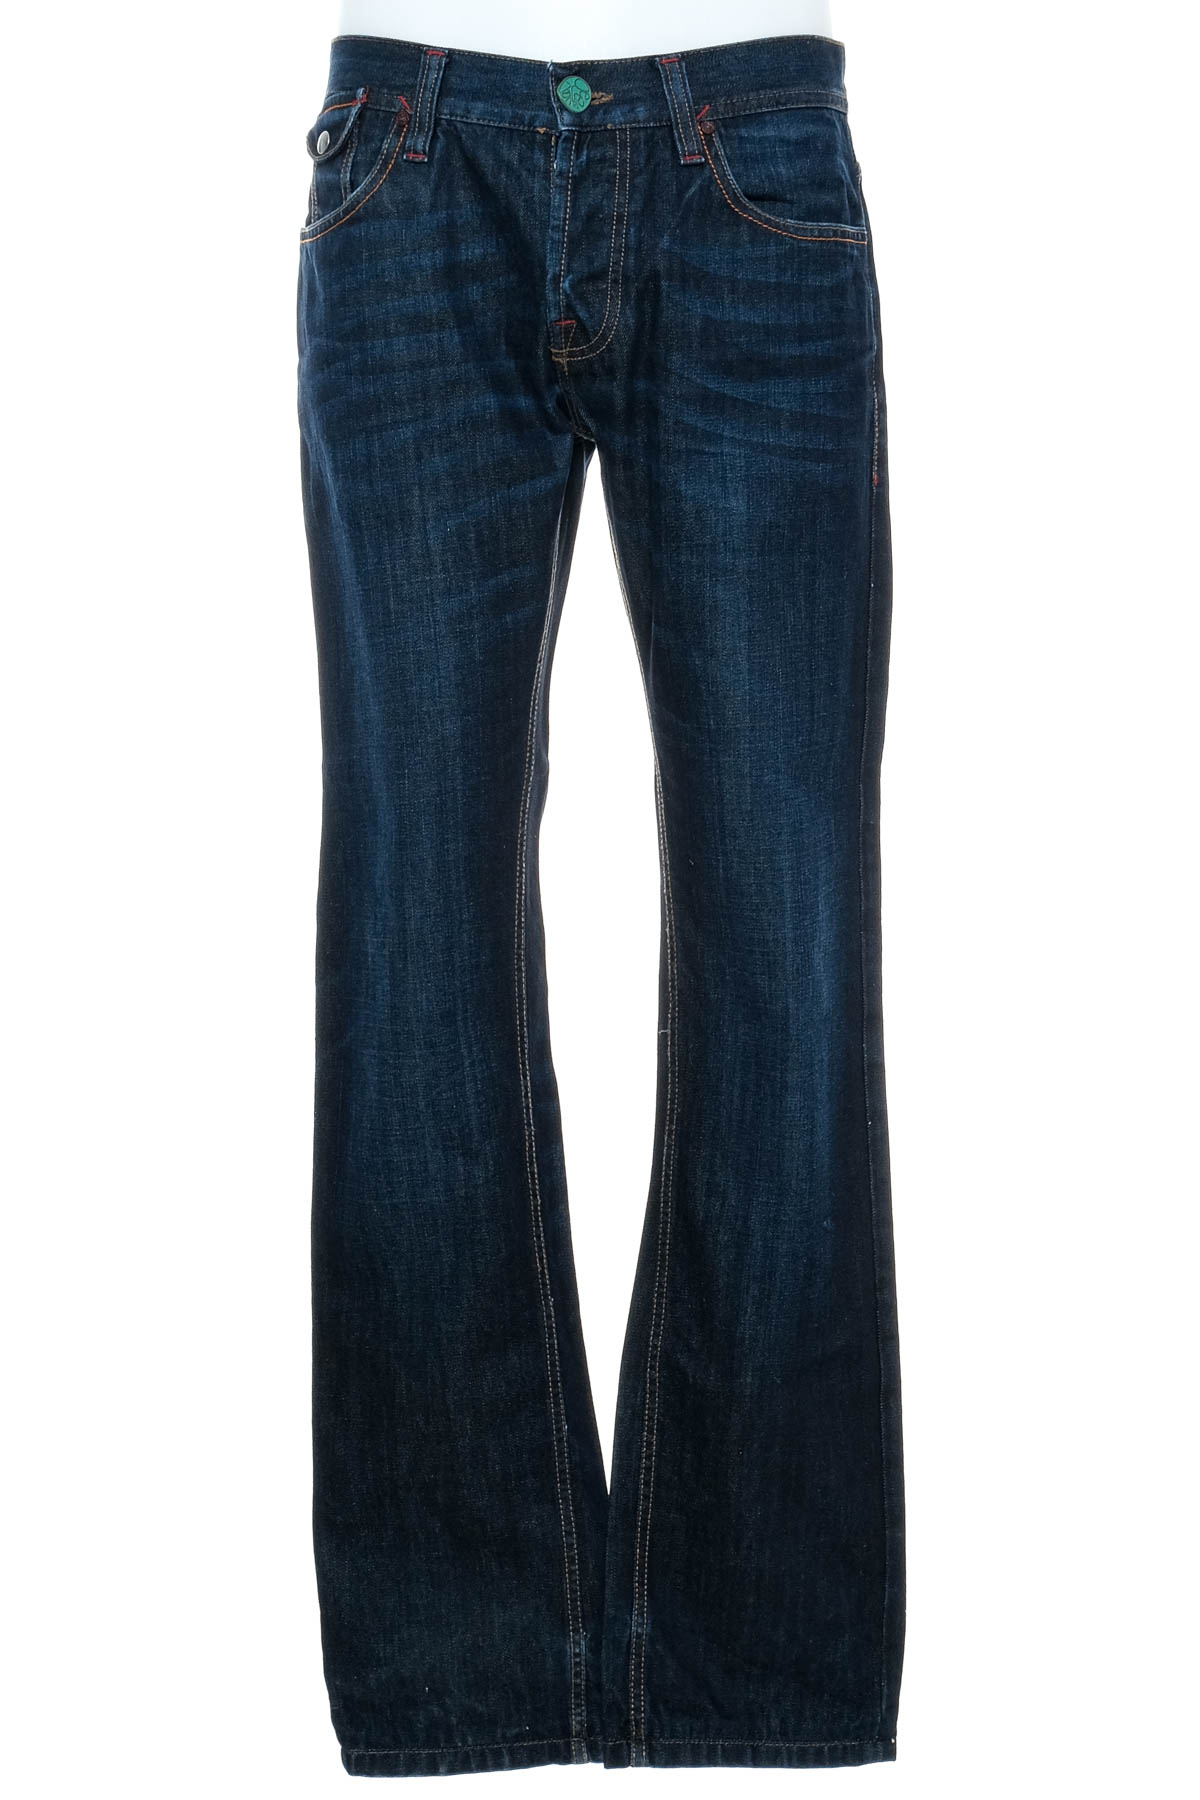 Jeans pentru bărbăți - Desigual - 0